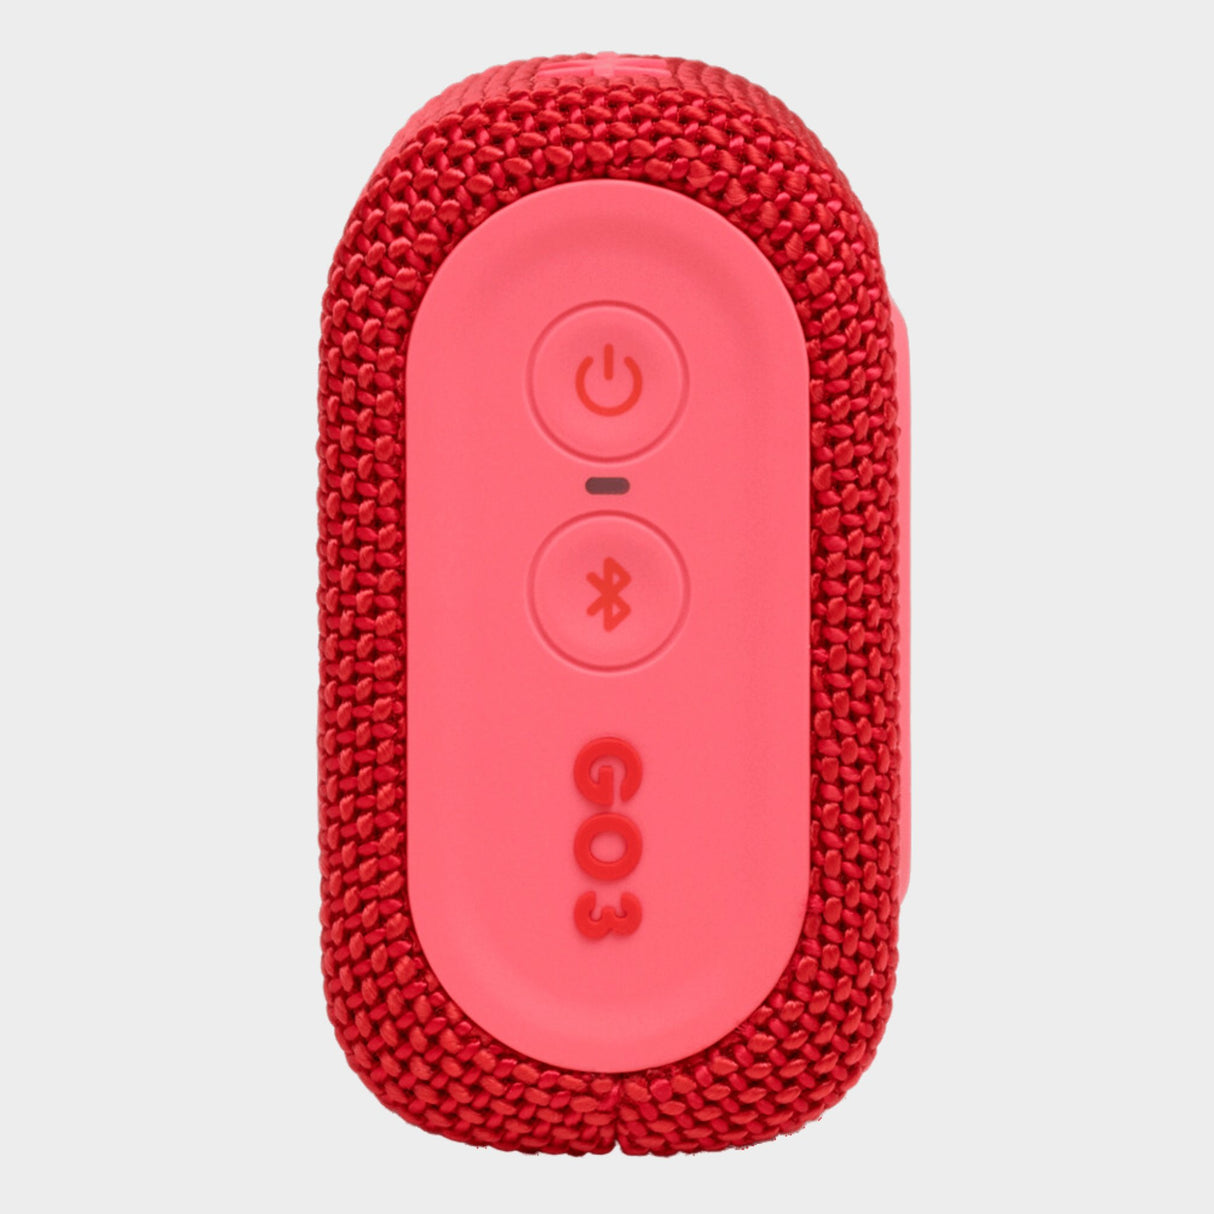 JBL Go 3, Waterproof Wireless Ultra Portable Speaker – Red - KWT Tech Mart